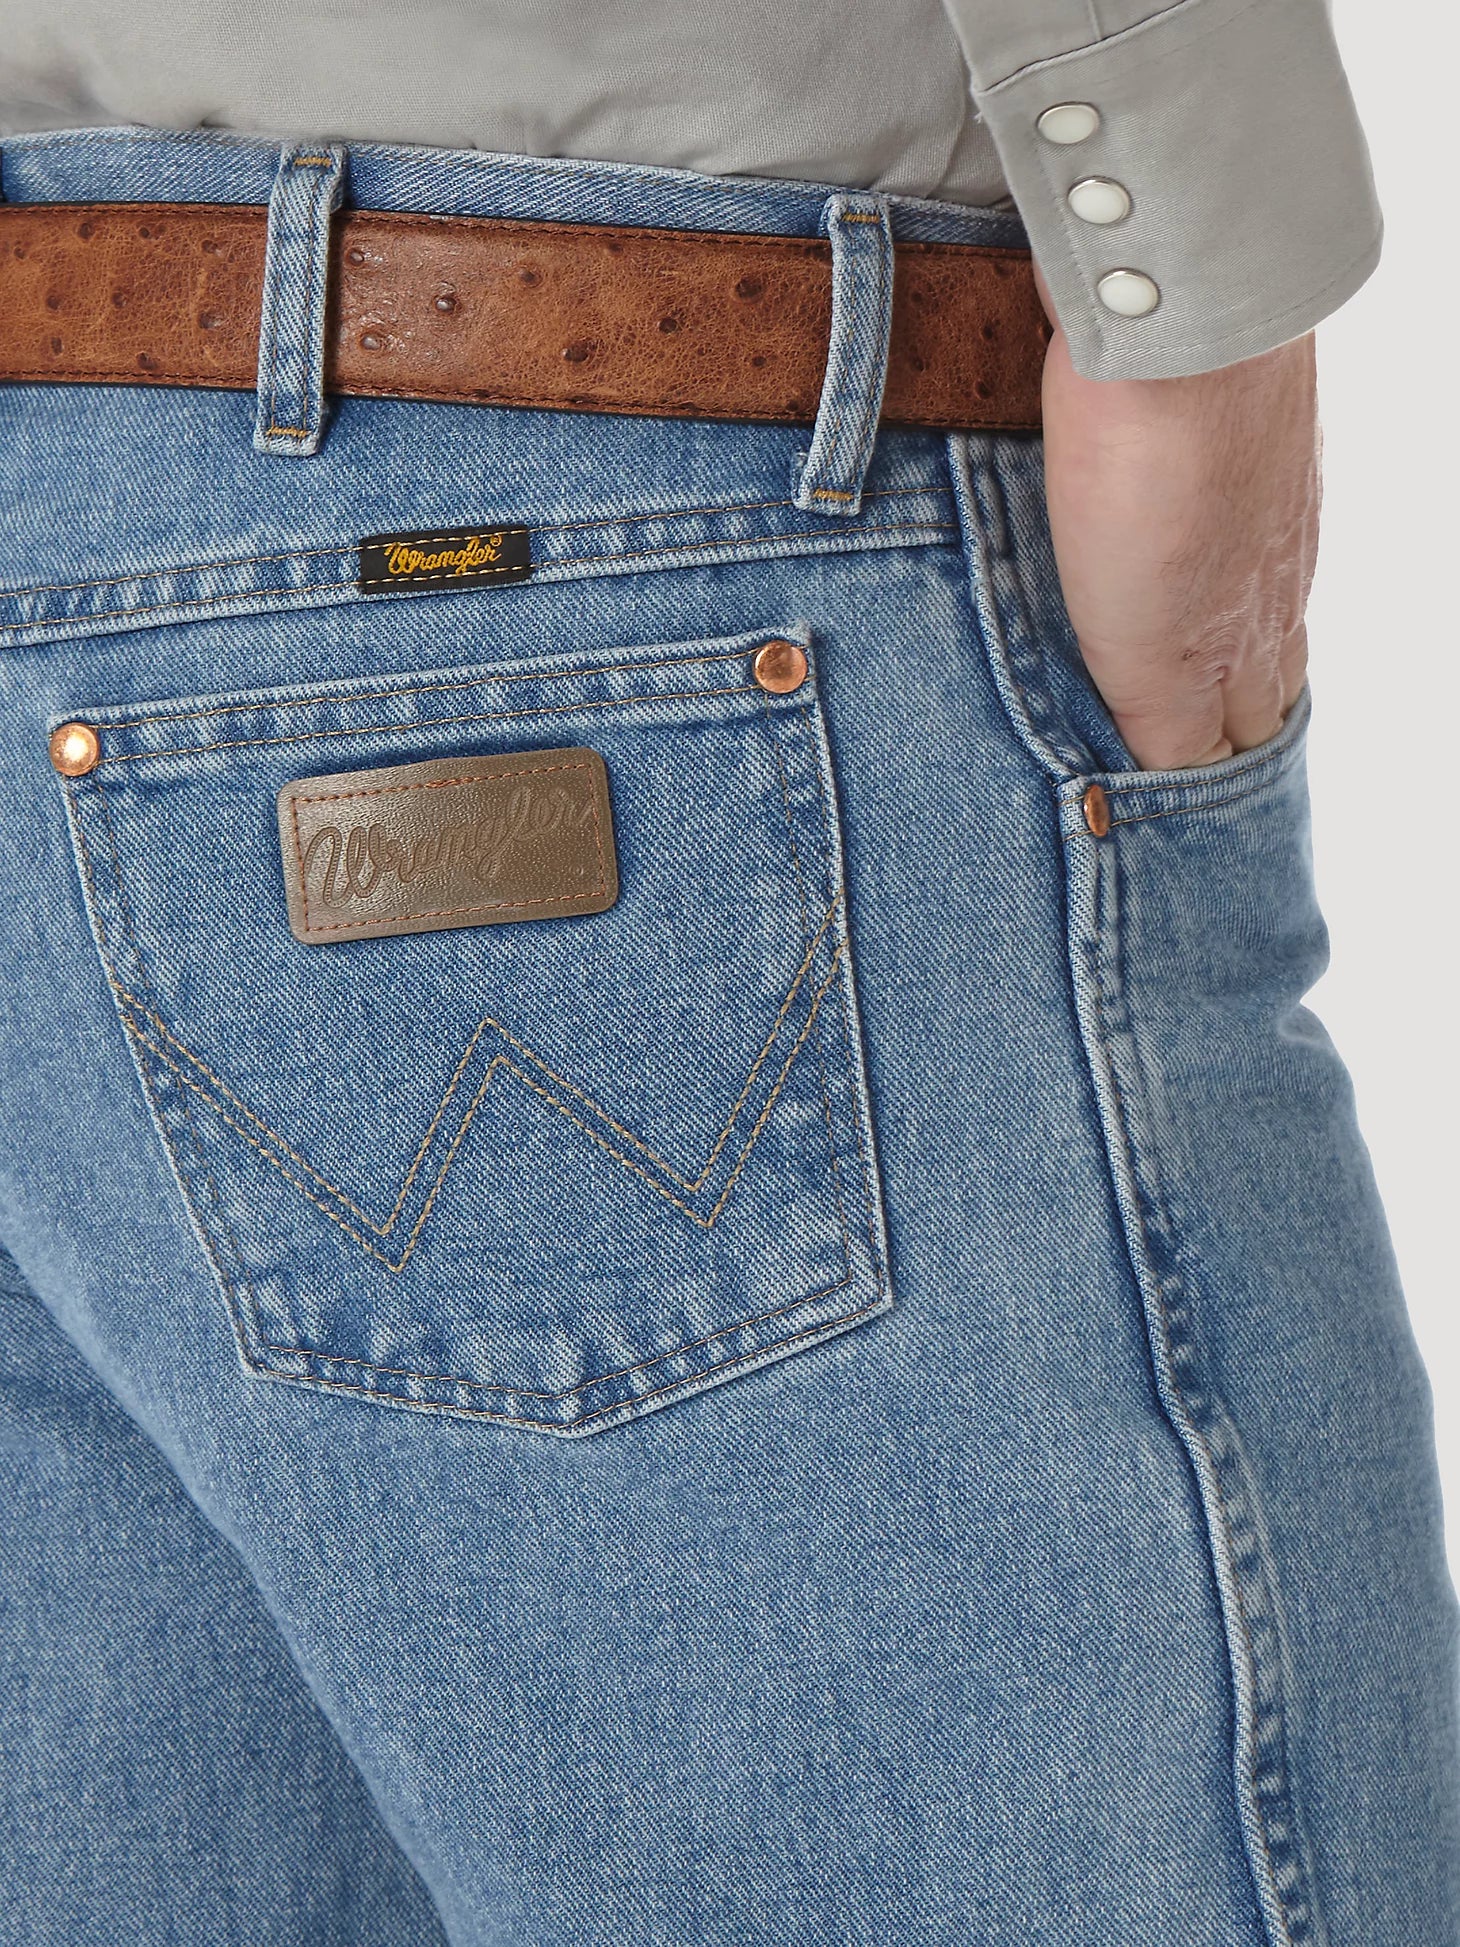 Jeans Wrangler Original Fit Prewashed Tan Caballero – Botas Chicho